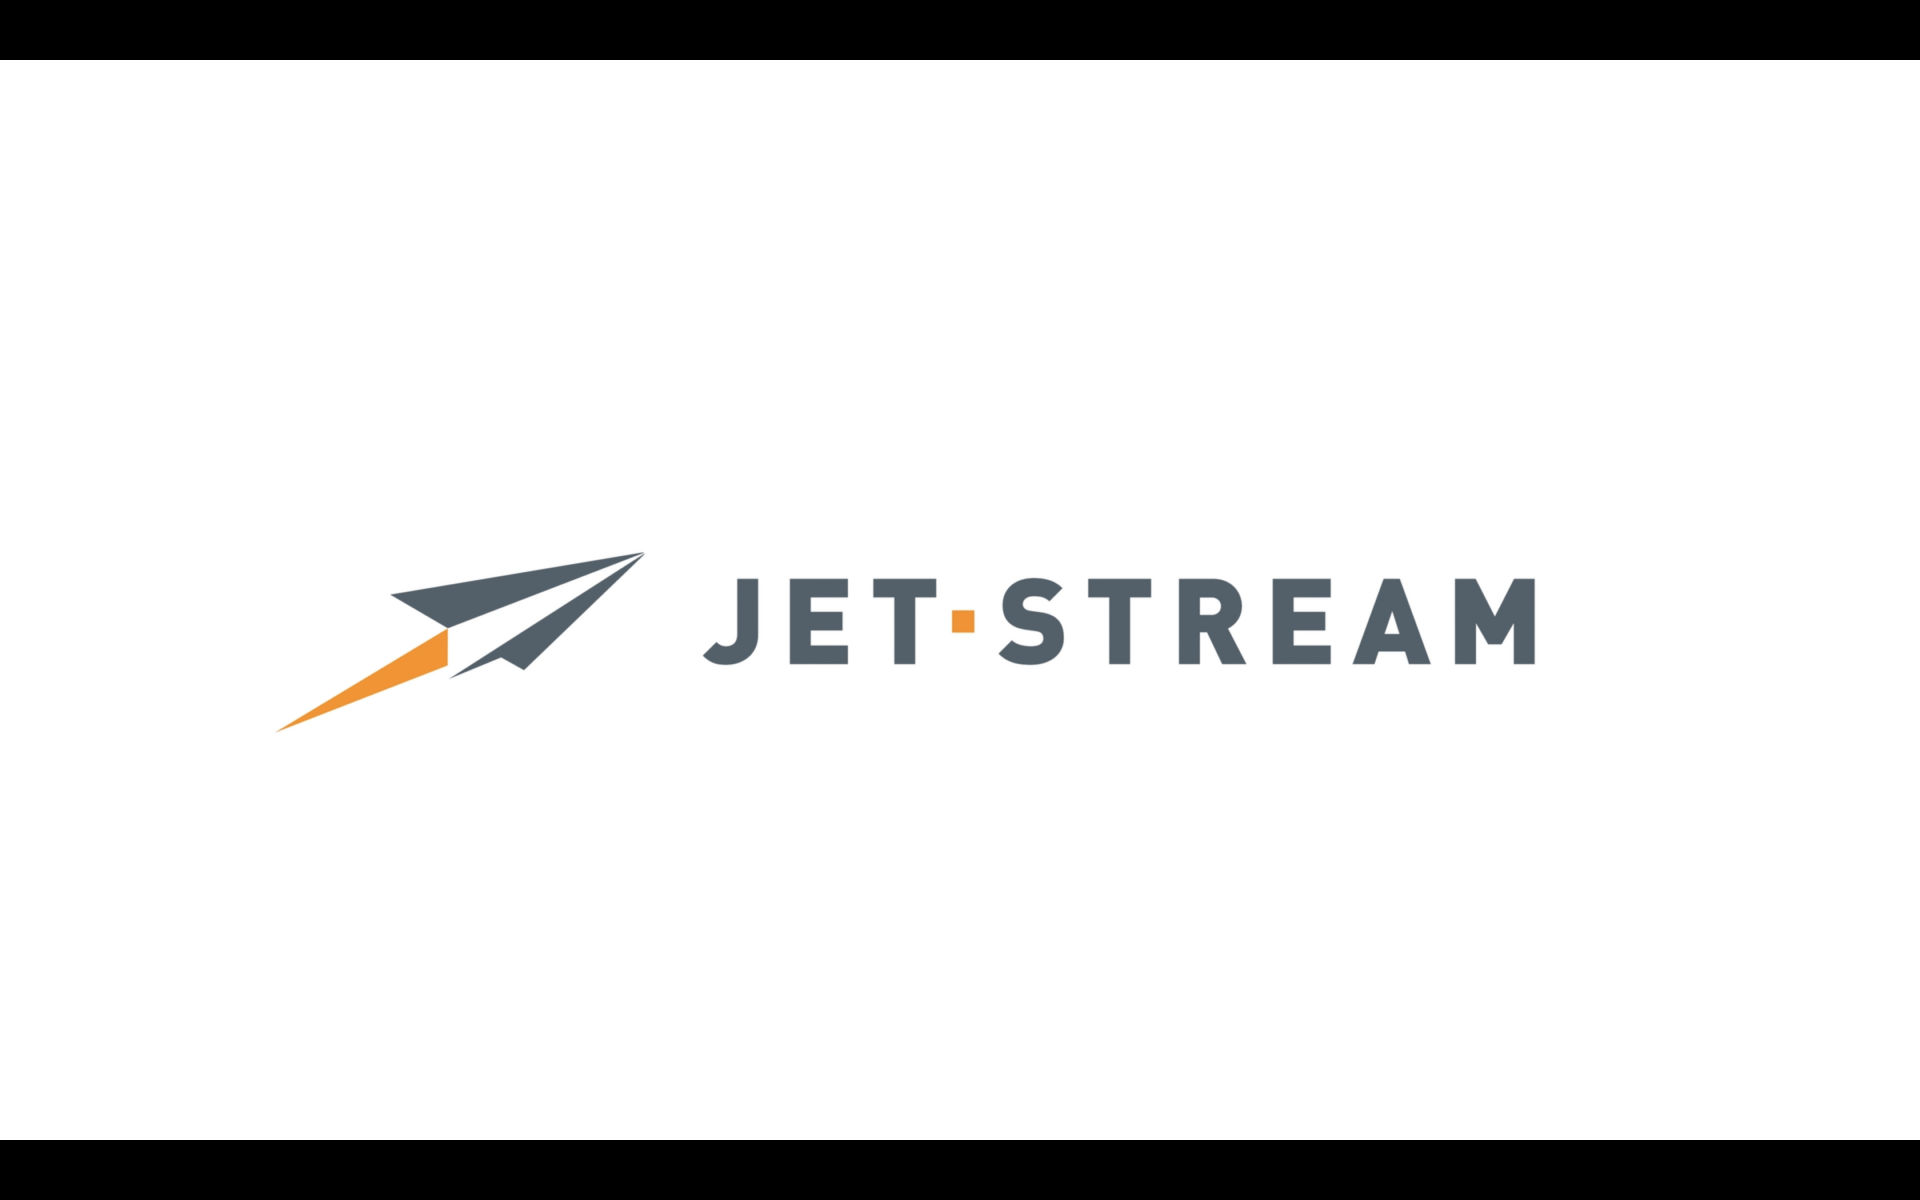 Jet-Stream outro.